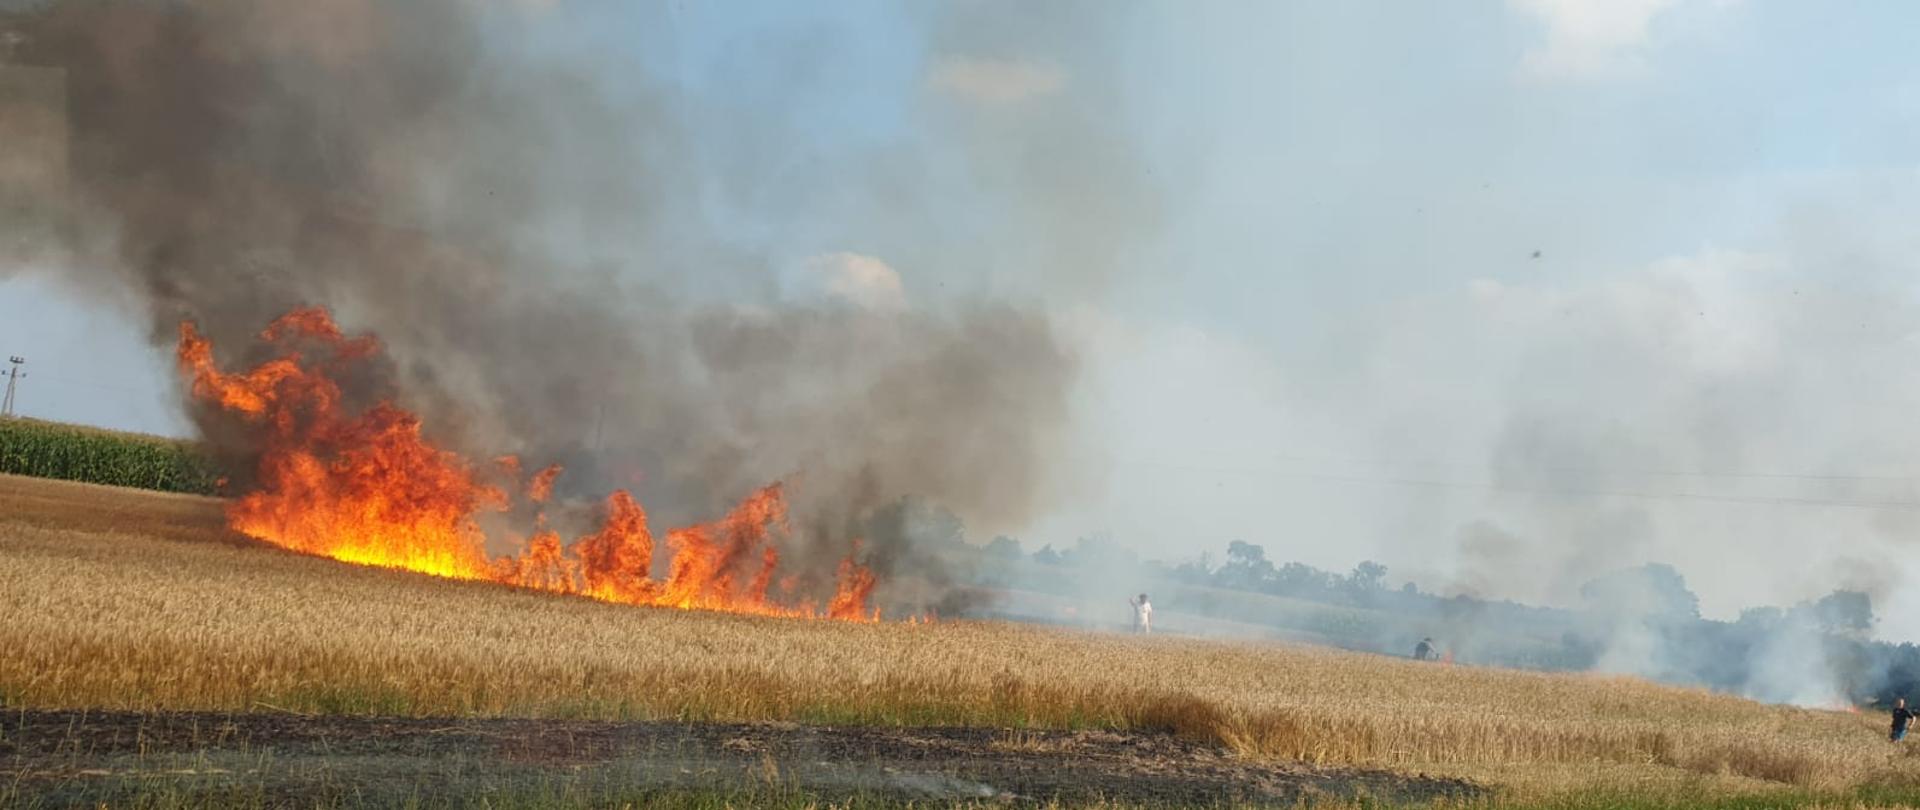 Płonące zboże na polu w miejscowości Książ Wlkp.